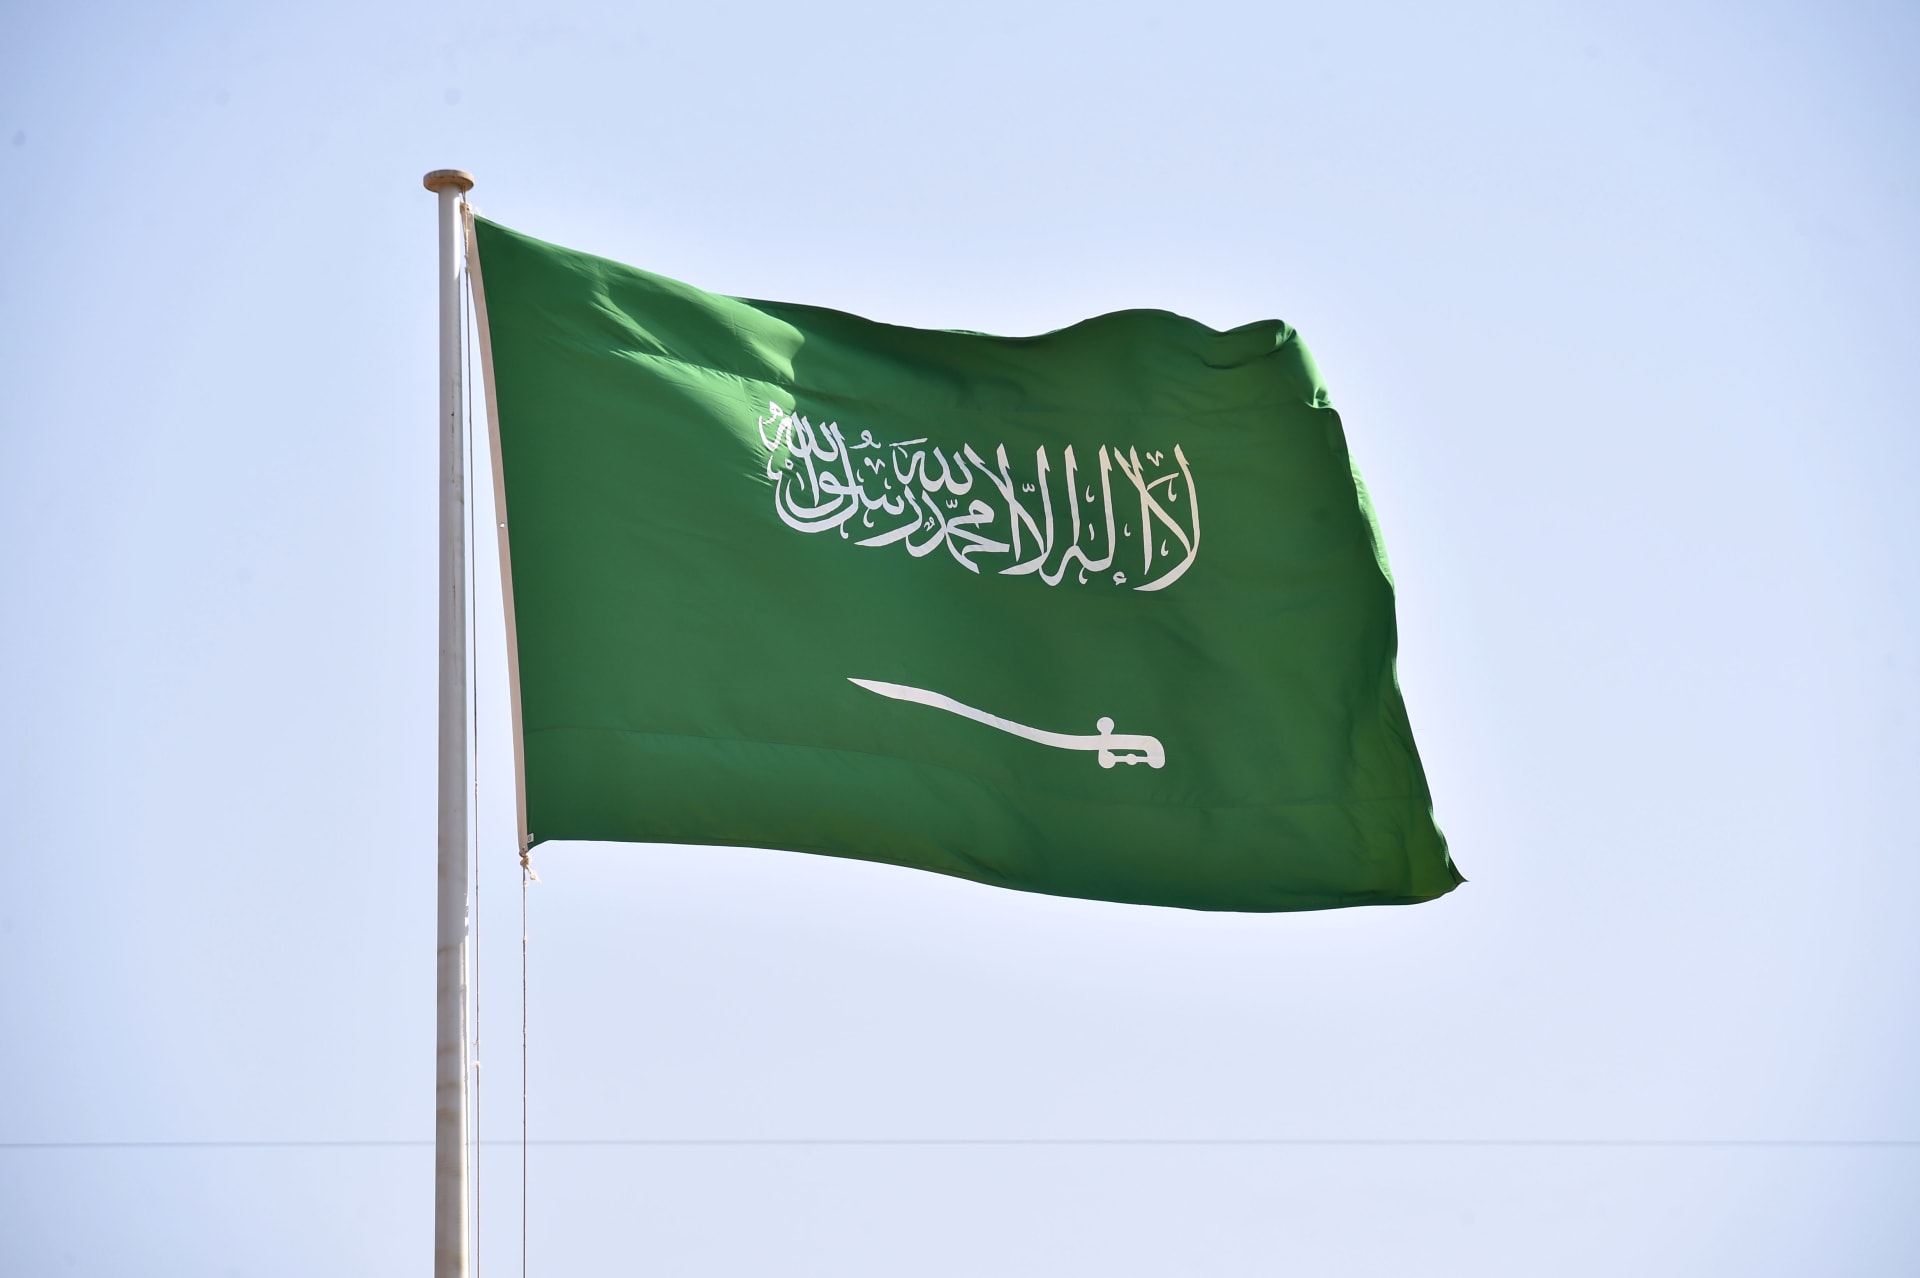 السعودية: القبض على مقيمين لتباهيهما بعرض مبالغ مالية مجهولة المصدر